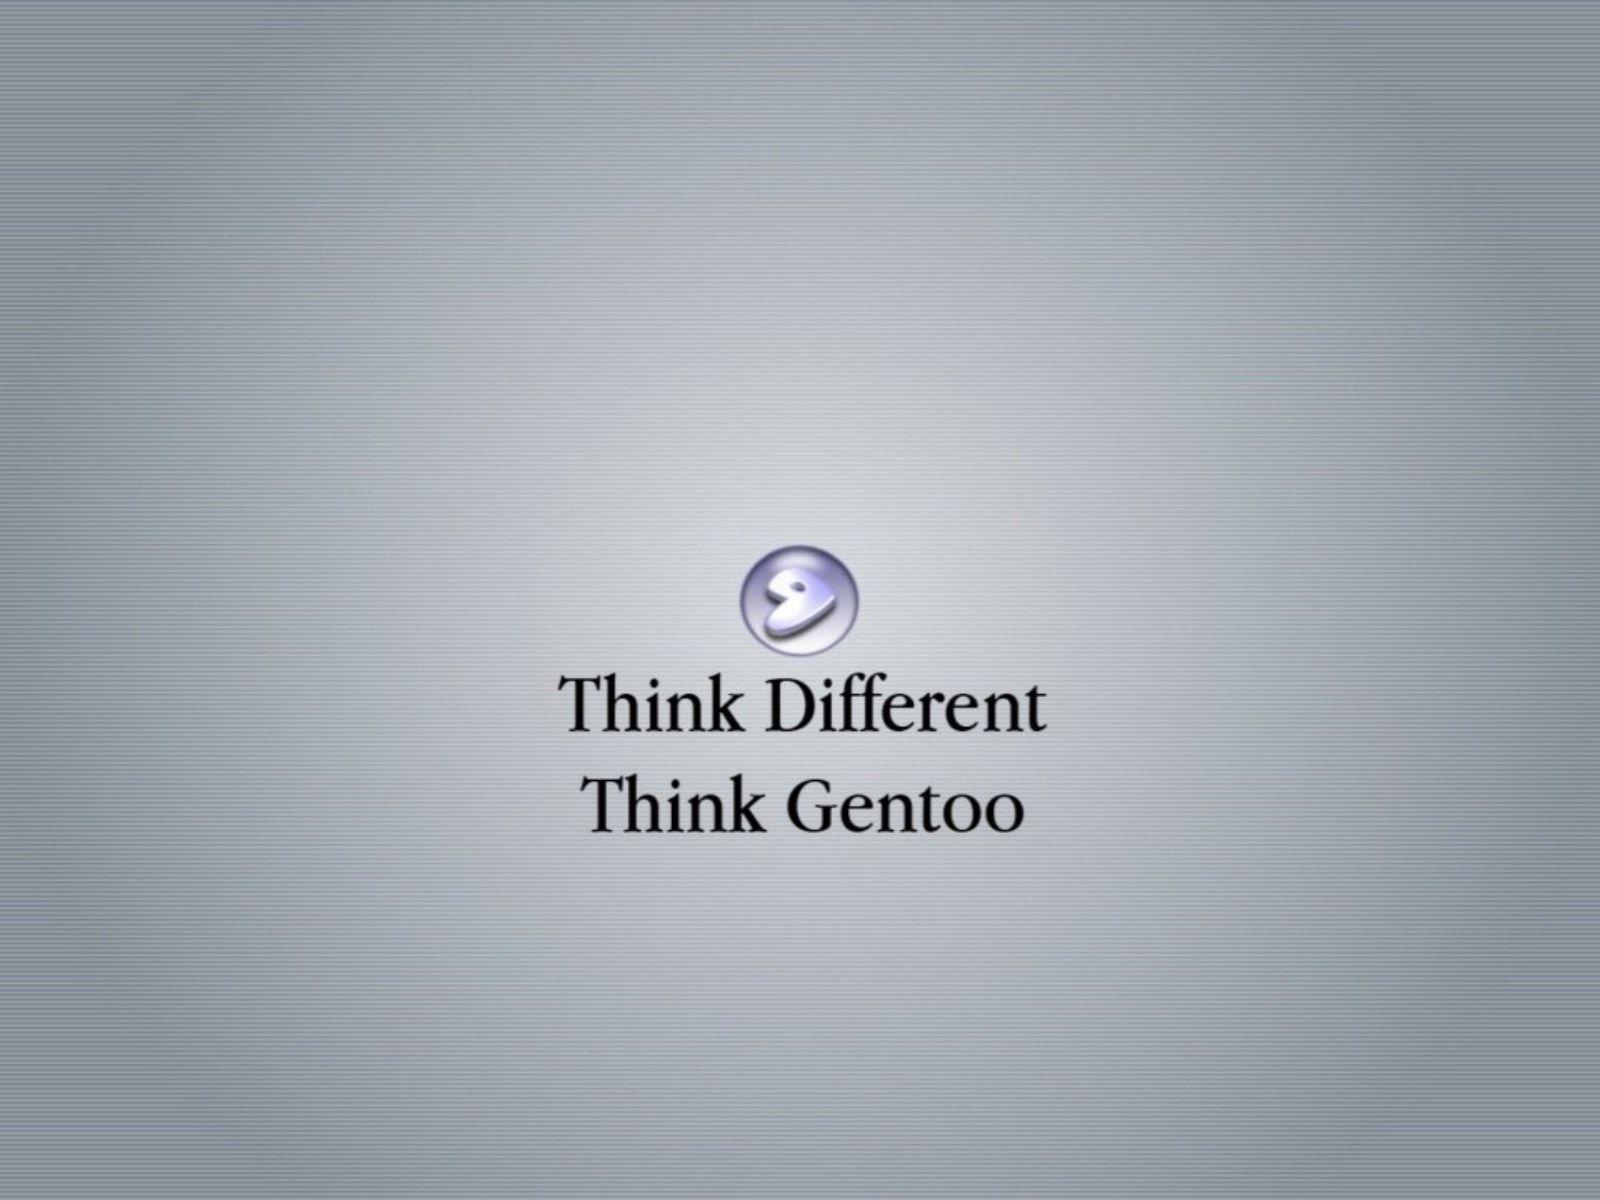 Think Gentoo Linux Wallpaper Gento is Smart Desktop